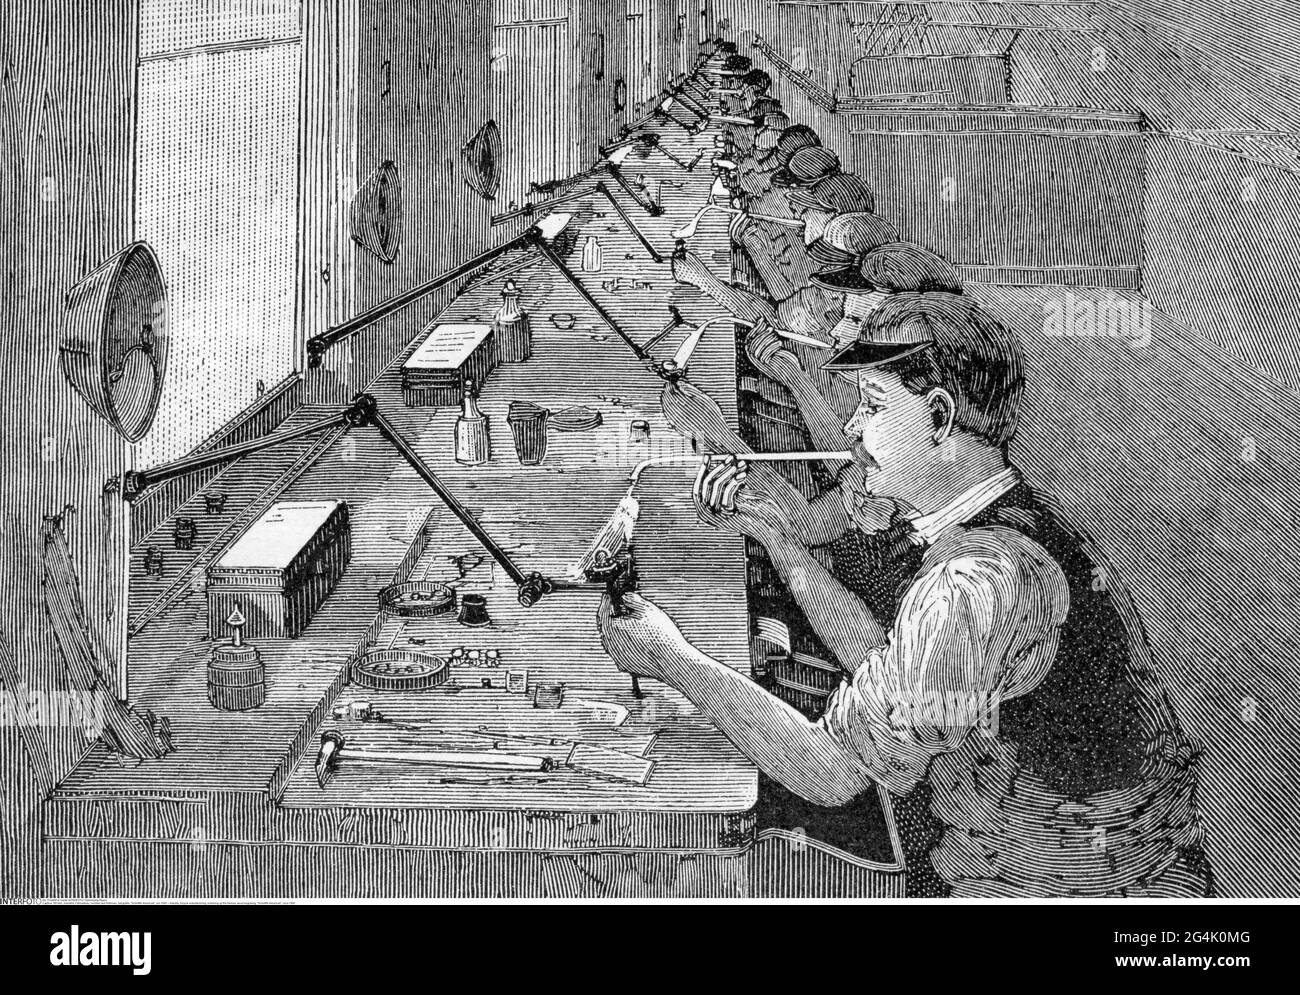 Industrie, fabrication de bicyclettes, soudage des cadres, gravure en bois, 'scientifique américain', vers 1895, LE DROIT D'AUTEUR DE L'ARTISTE N'A PAS À ÊTRE AUTORISÉ Banque D'Images